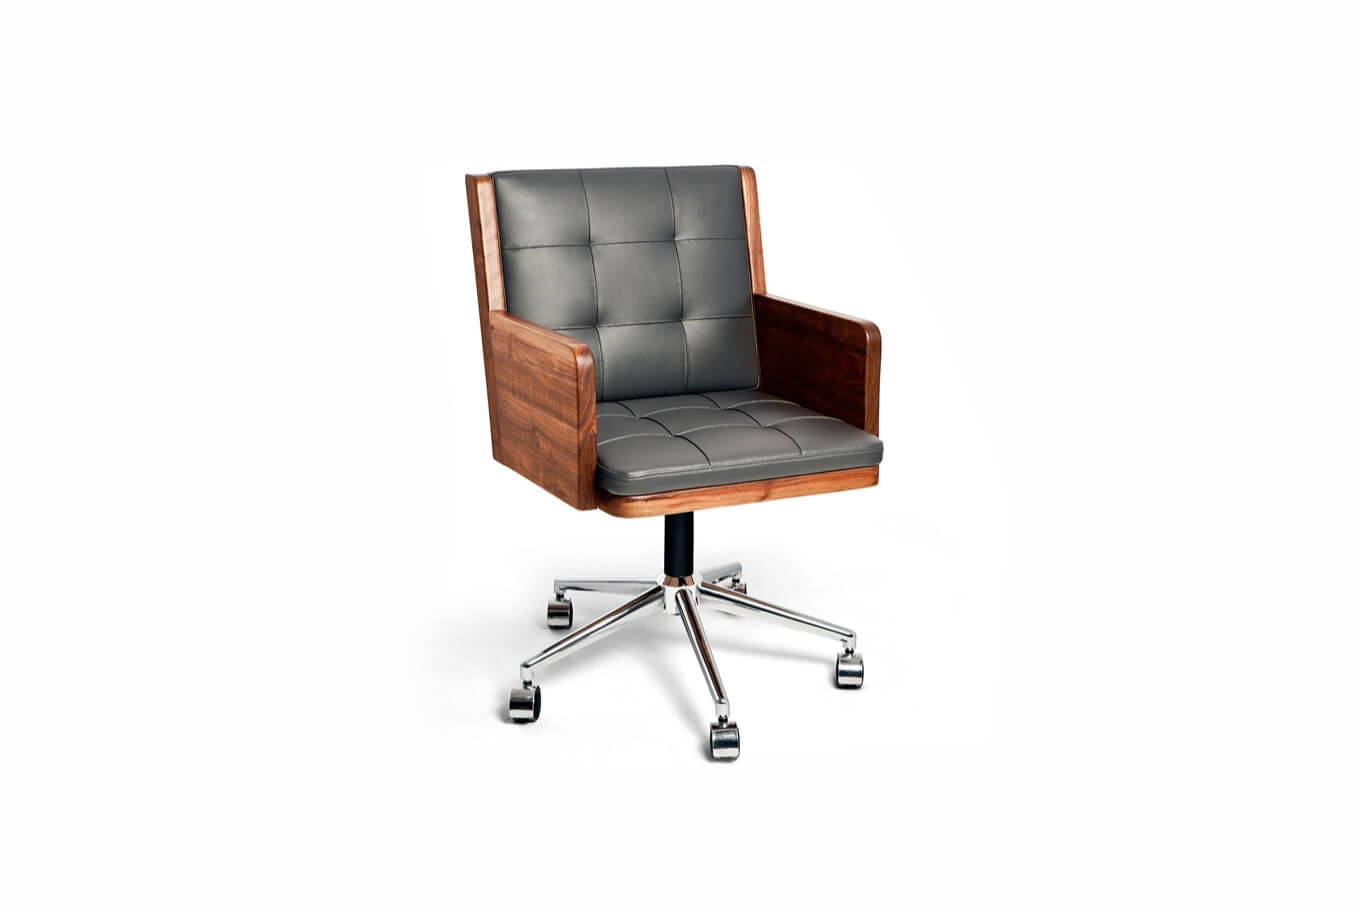 Модель офисного кресла. Кресло AG Grid Office Chair lb. Кресло офисное/Office Chair without Wheels. Кресло компьютерное Bali sedia KS-37566. Кресло Darvin MLM 611382.